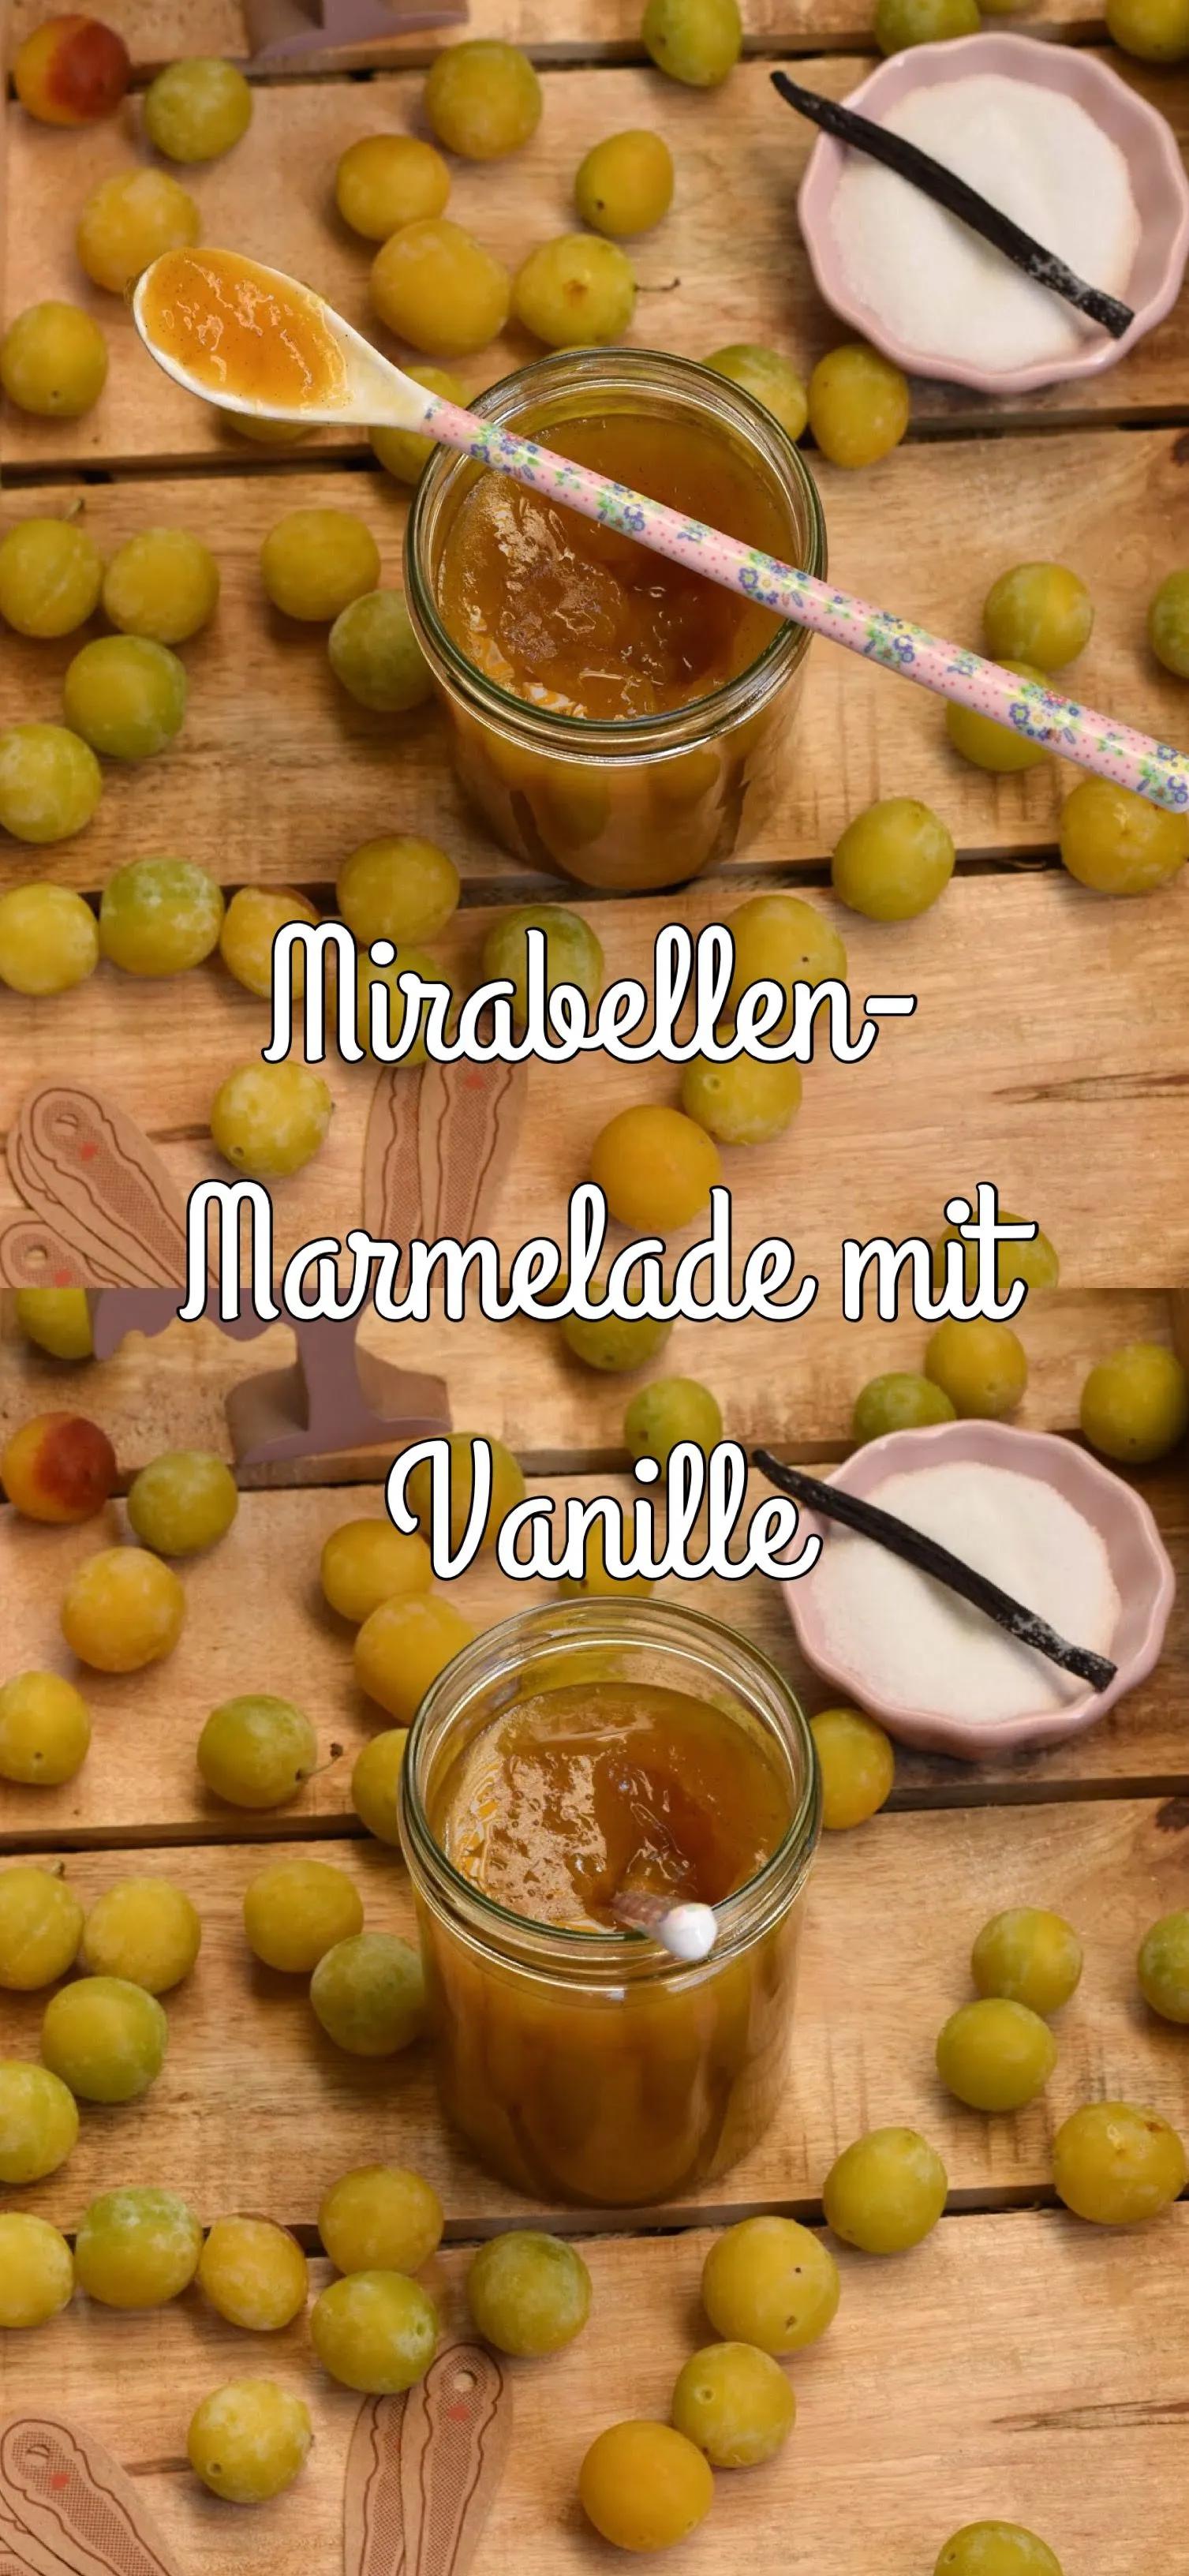 Wie wäre es mit einer fruchtigen Mirabellen-Marmelade mit Vanille? Sie ...